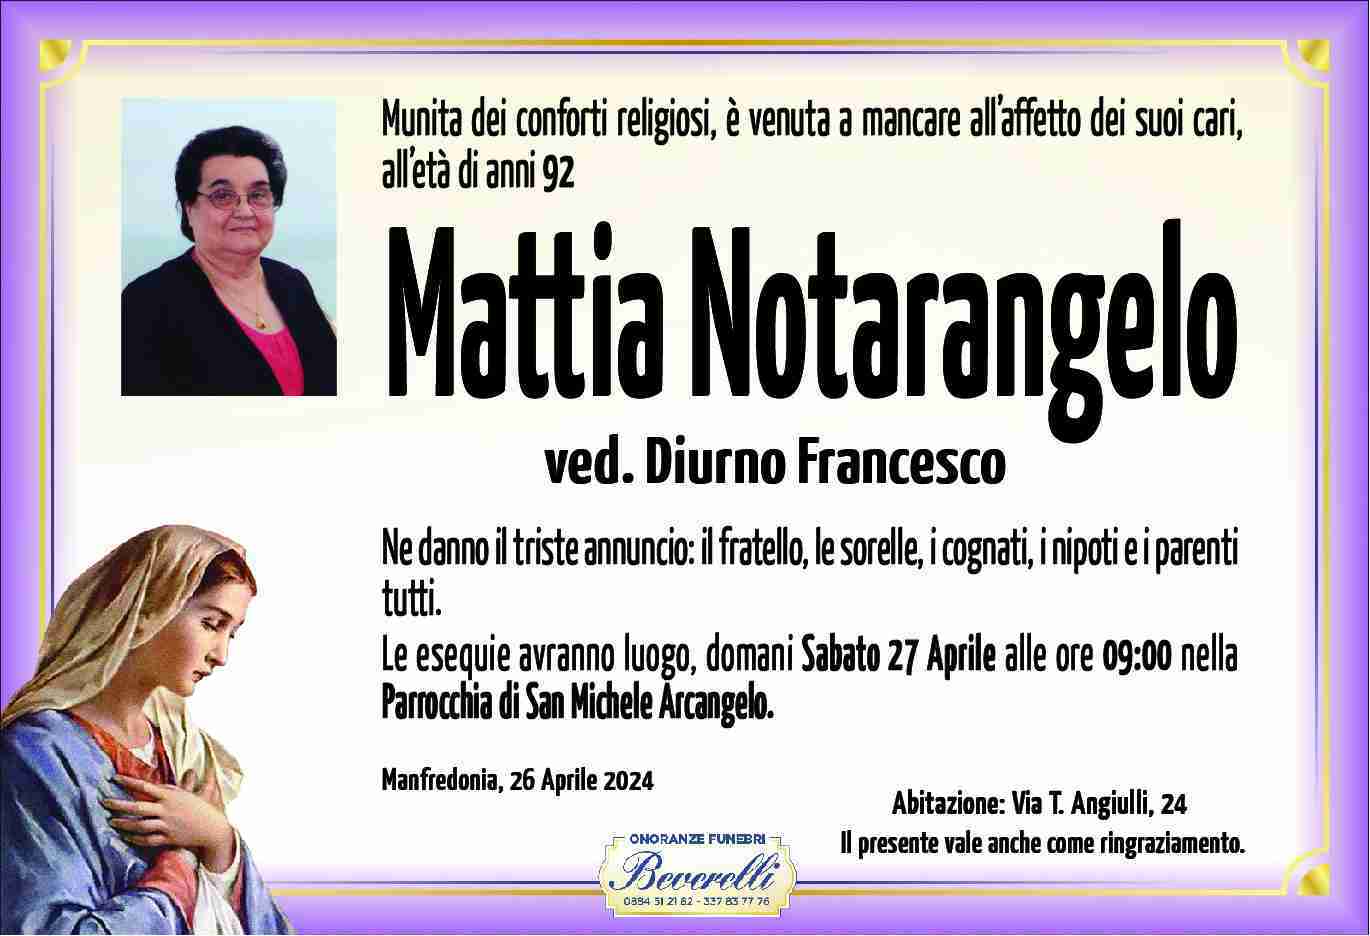 Mattia Notarangelo